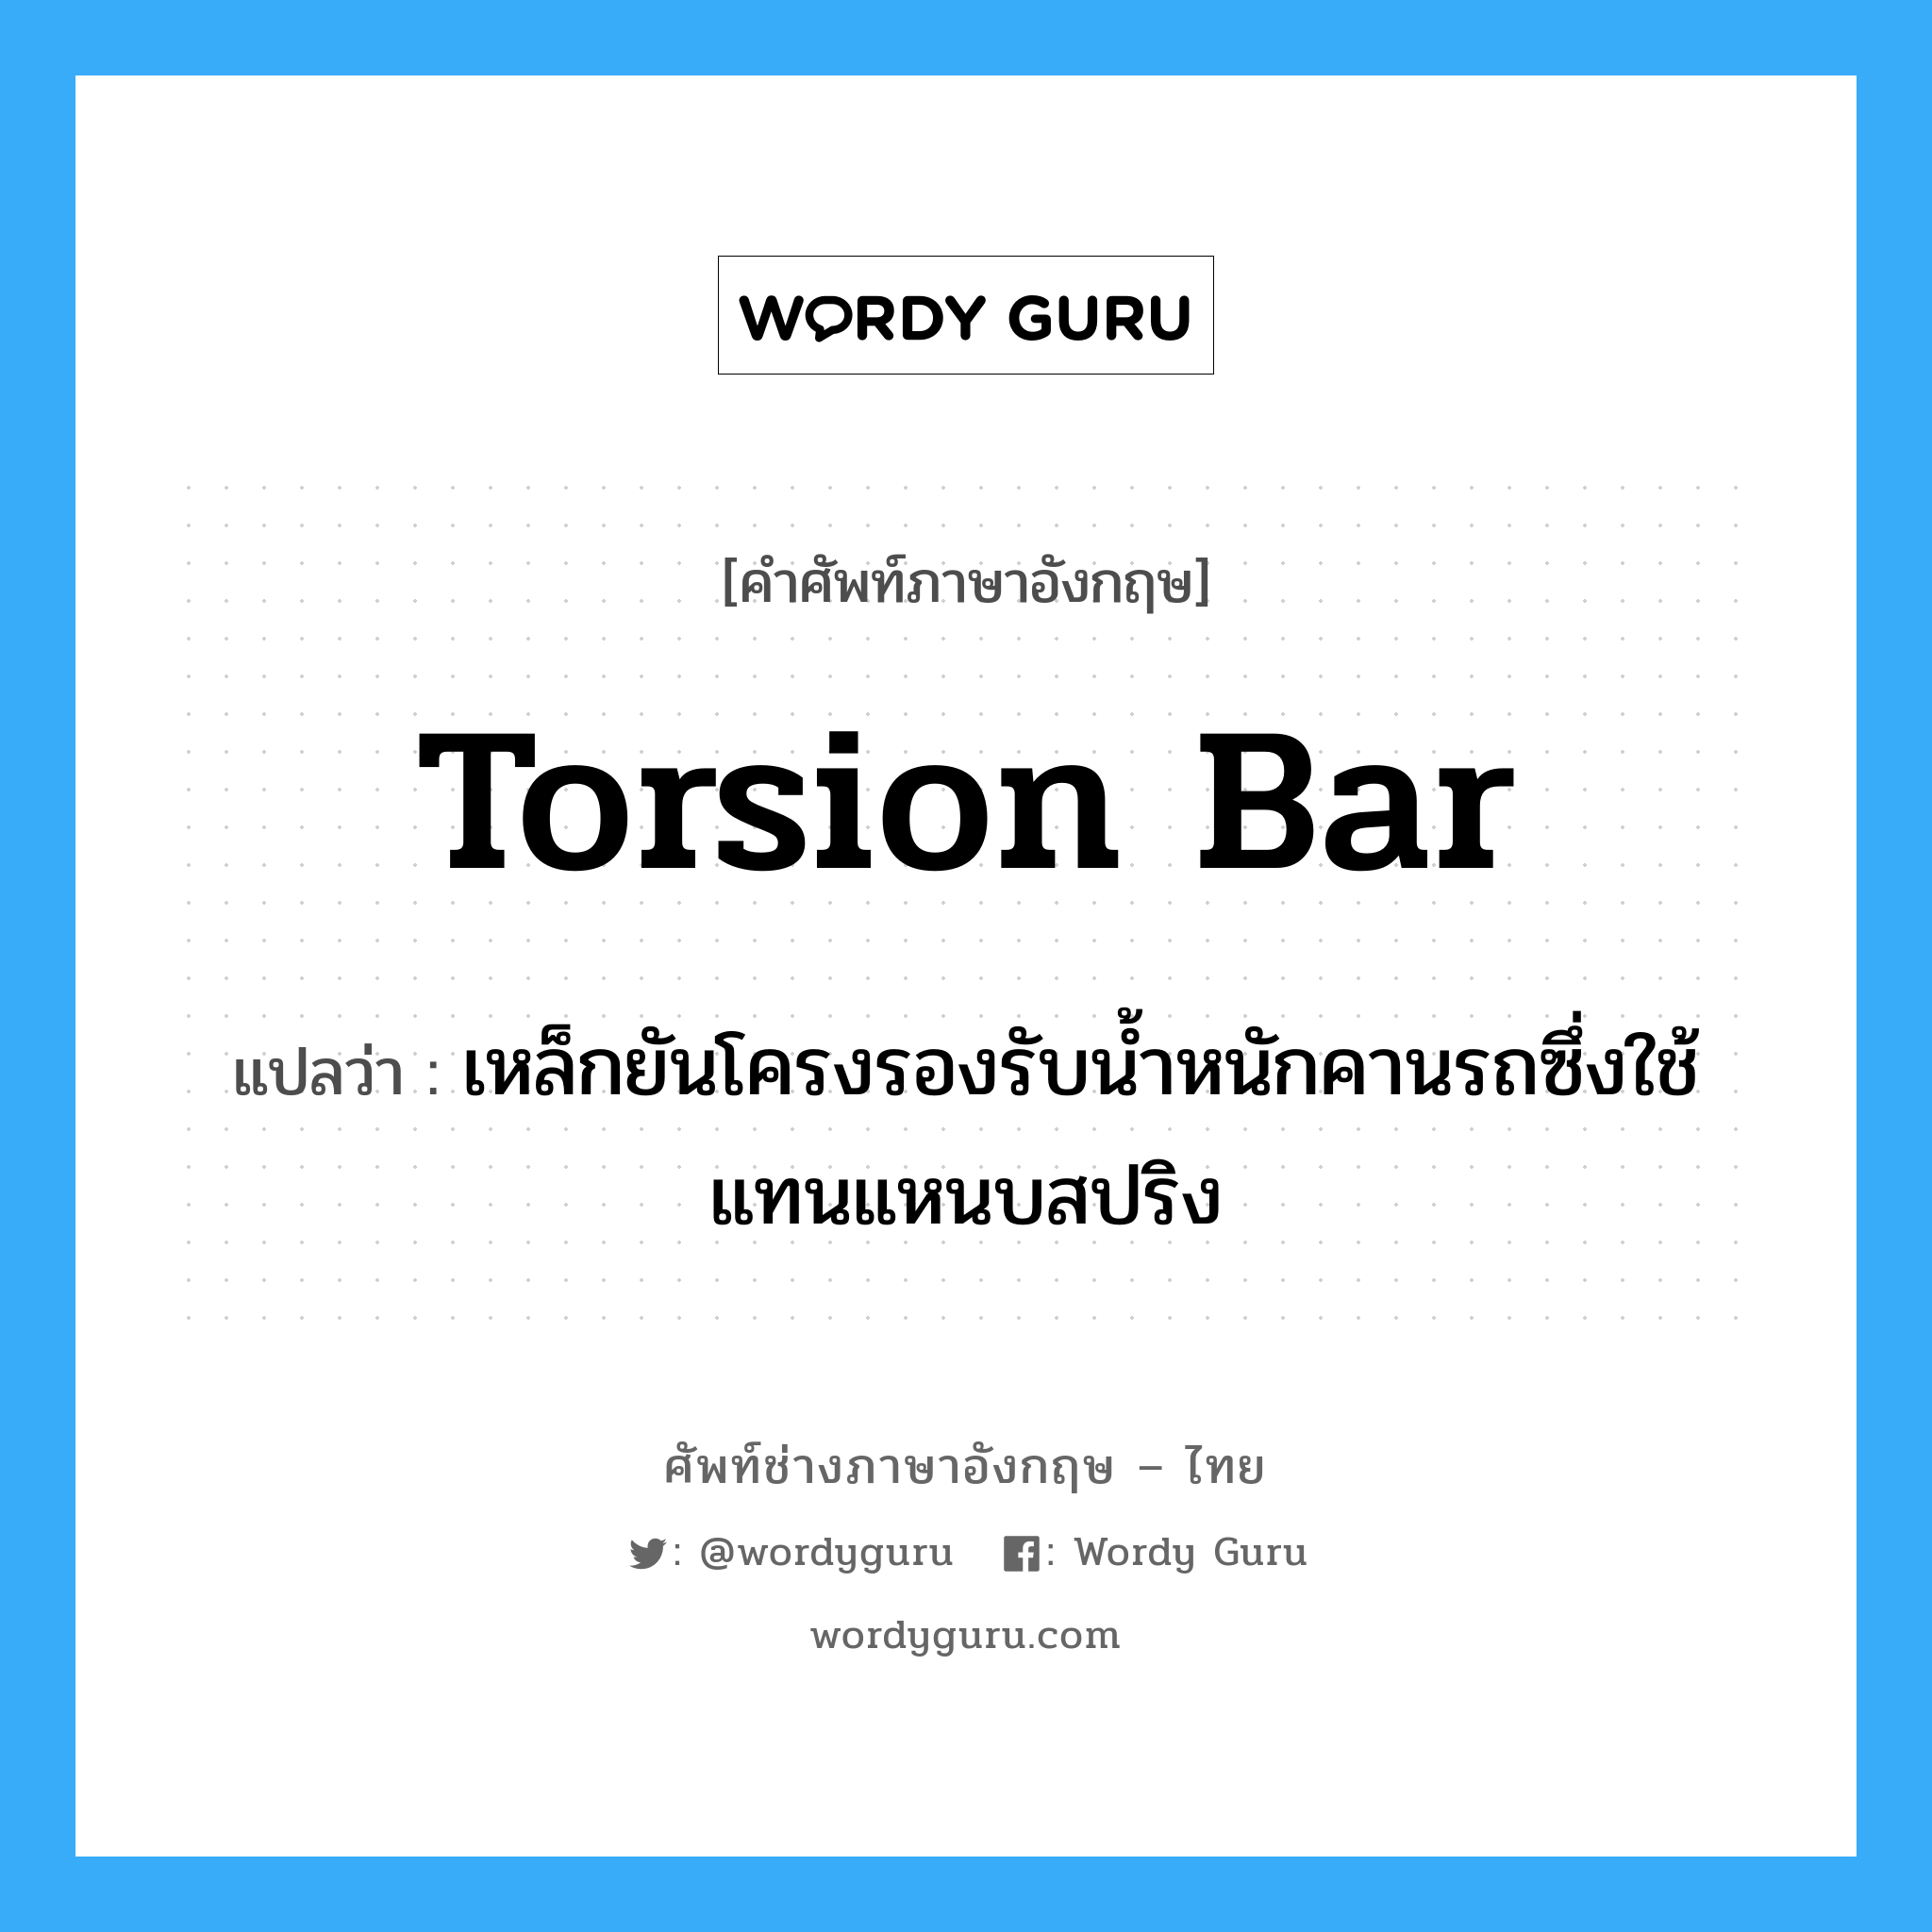 torsion bar แปลว่า?, คำศัพท์ช่างภาษาอังกฤษ - ไทย torsion bar คำศัพท์ภาษาอังกฤษ torsion bar แปลว่า เหล็กยันโครงรองรับน้ำหนักคานรถซึ่งใช้แทนแหนบสปริง